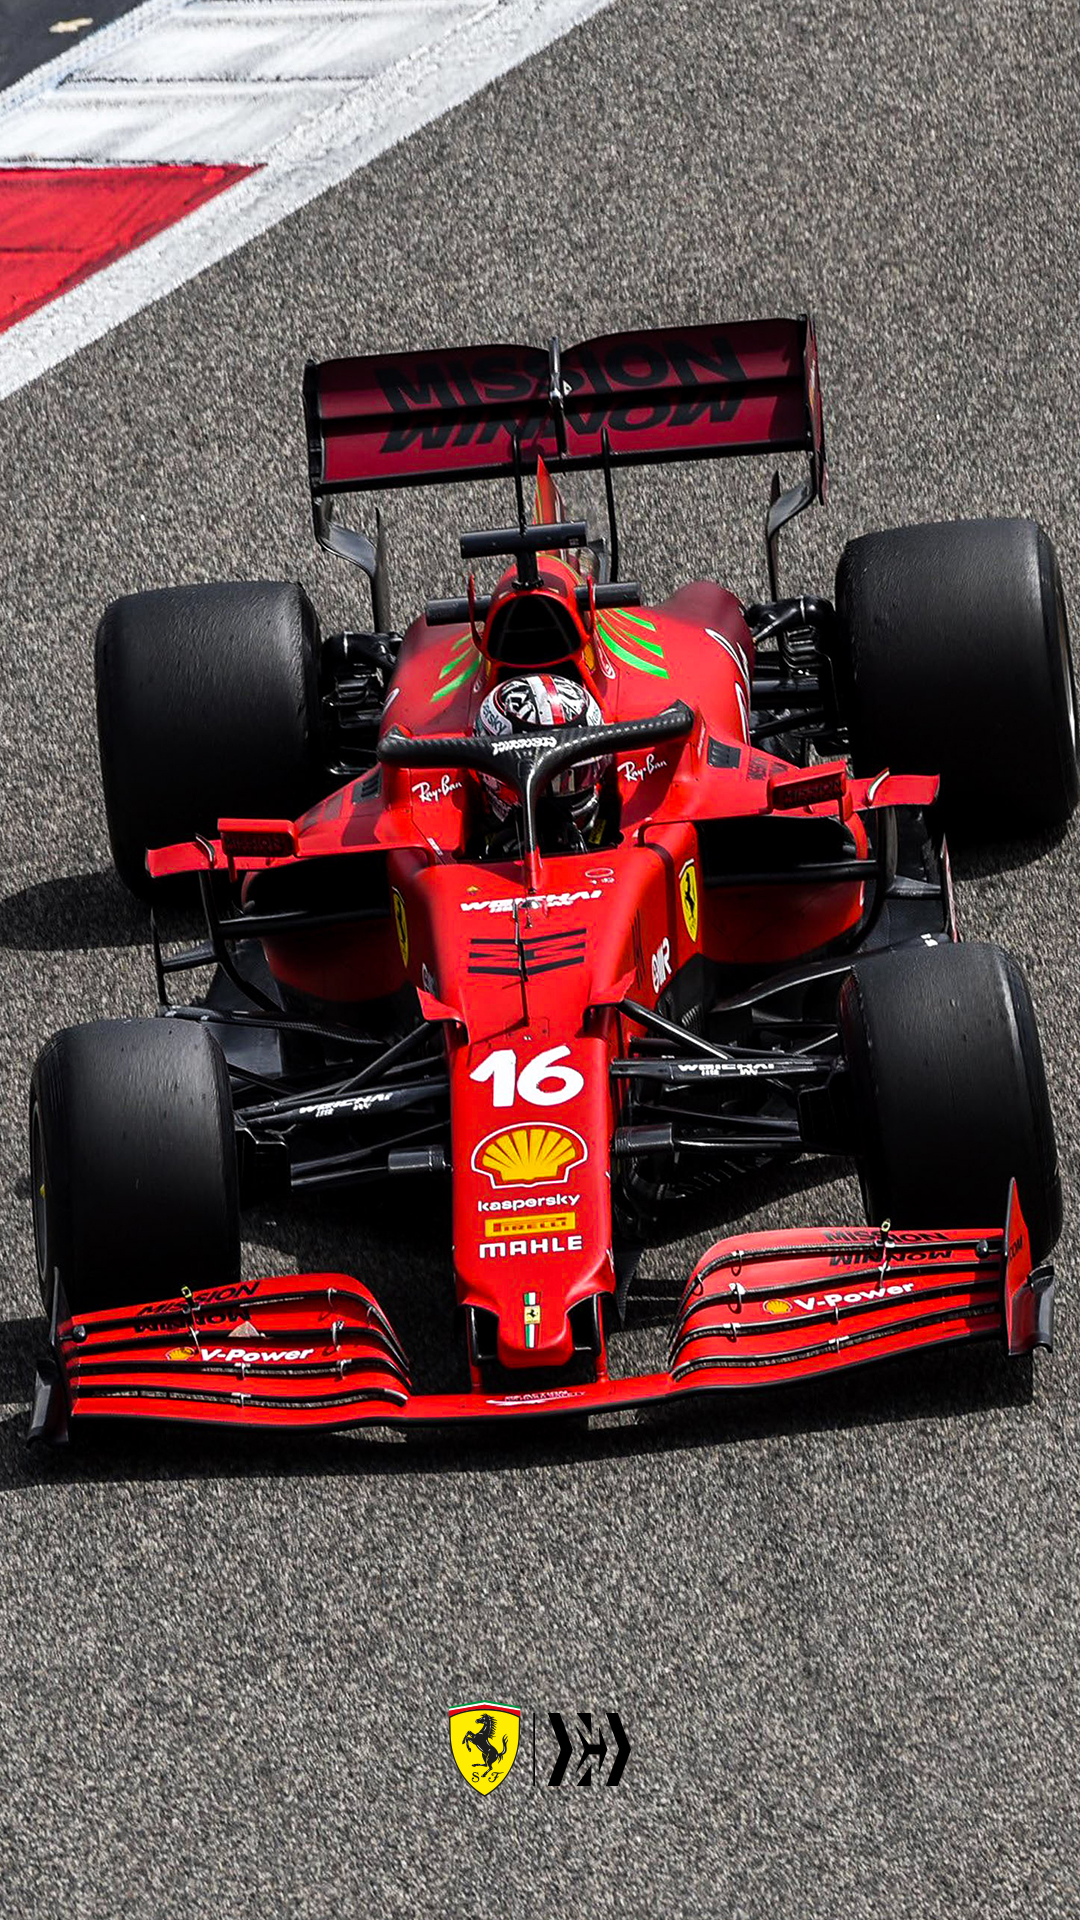 Scuderia Ferrari - #F1Testing wallpaper? We've got those too